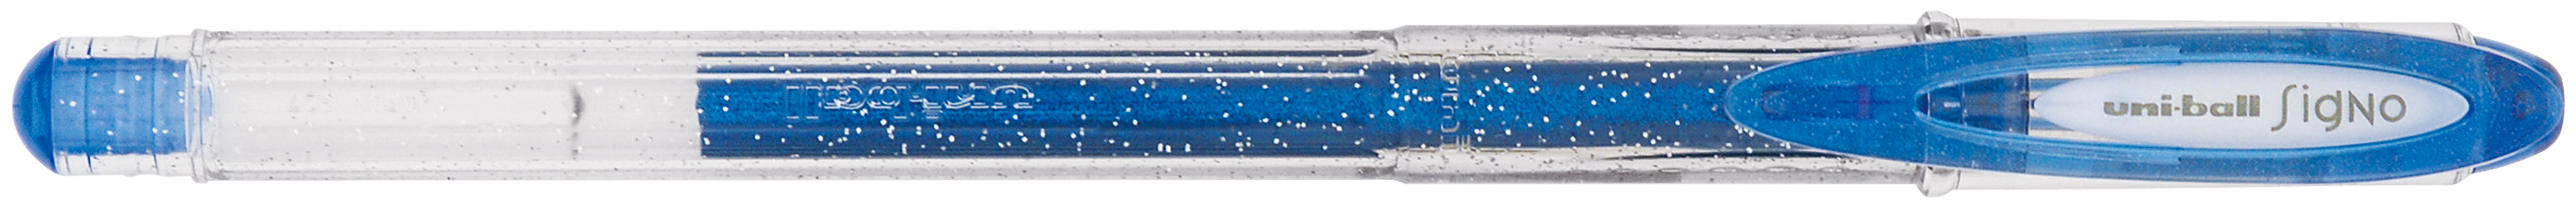 UNI-BALL Signo Sparkling 1mm UM120SP BLUE bleu